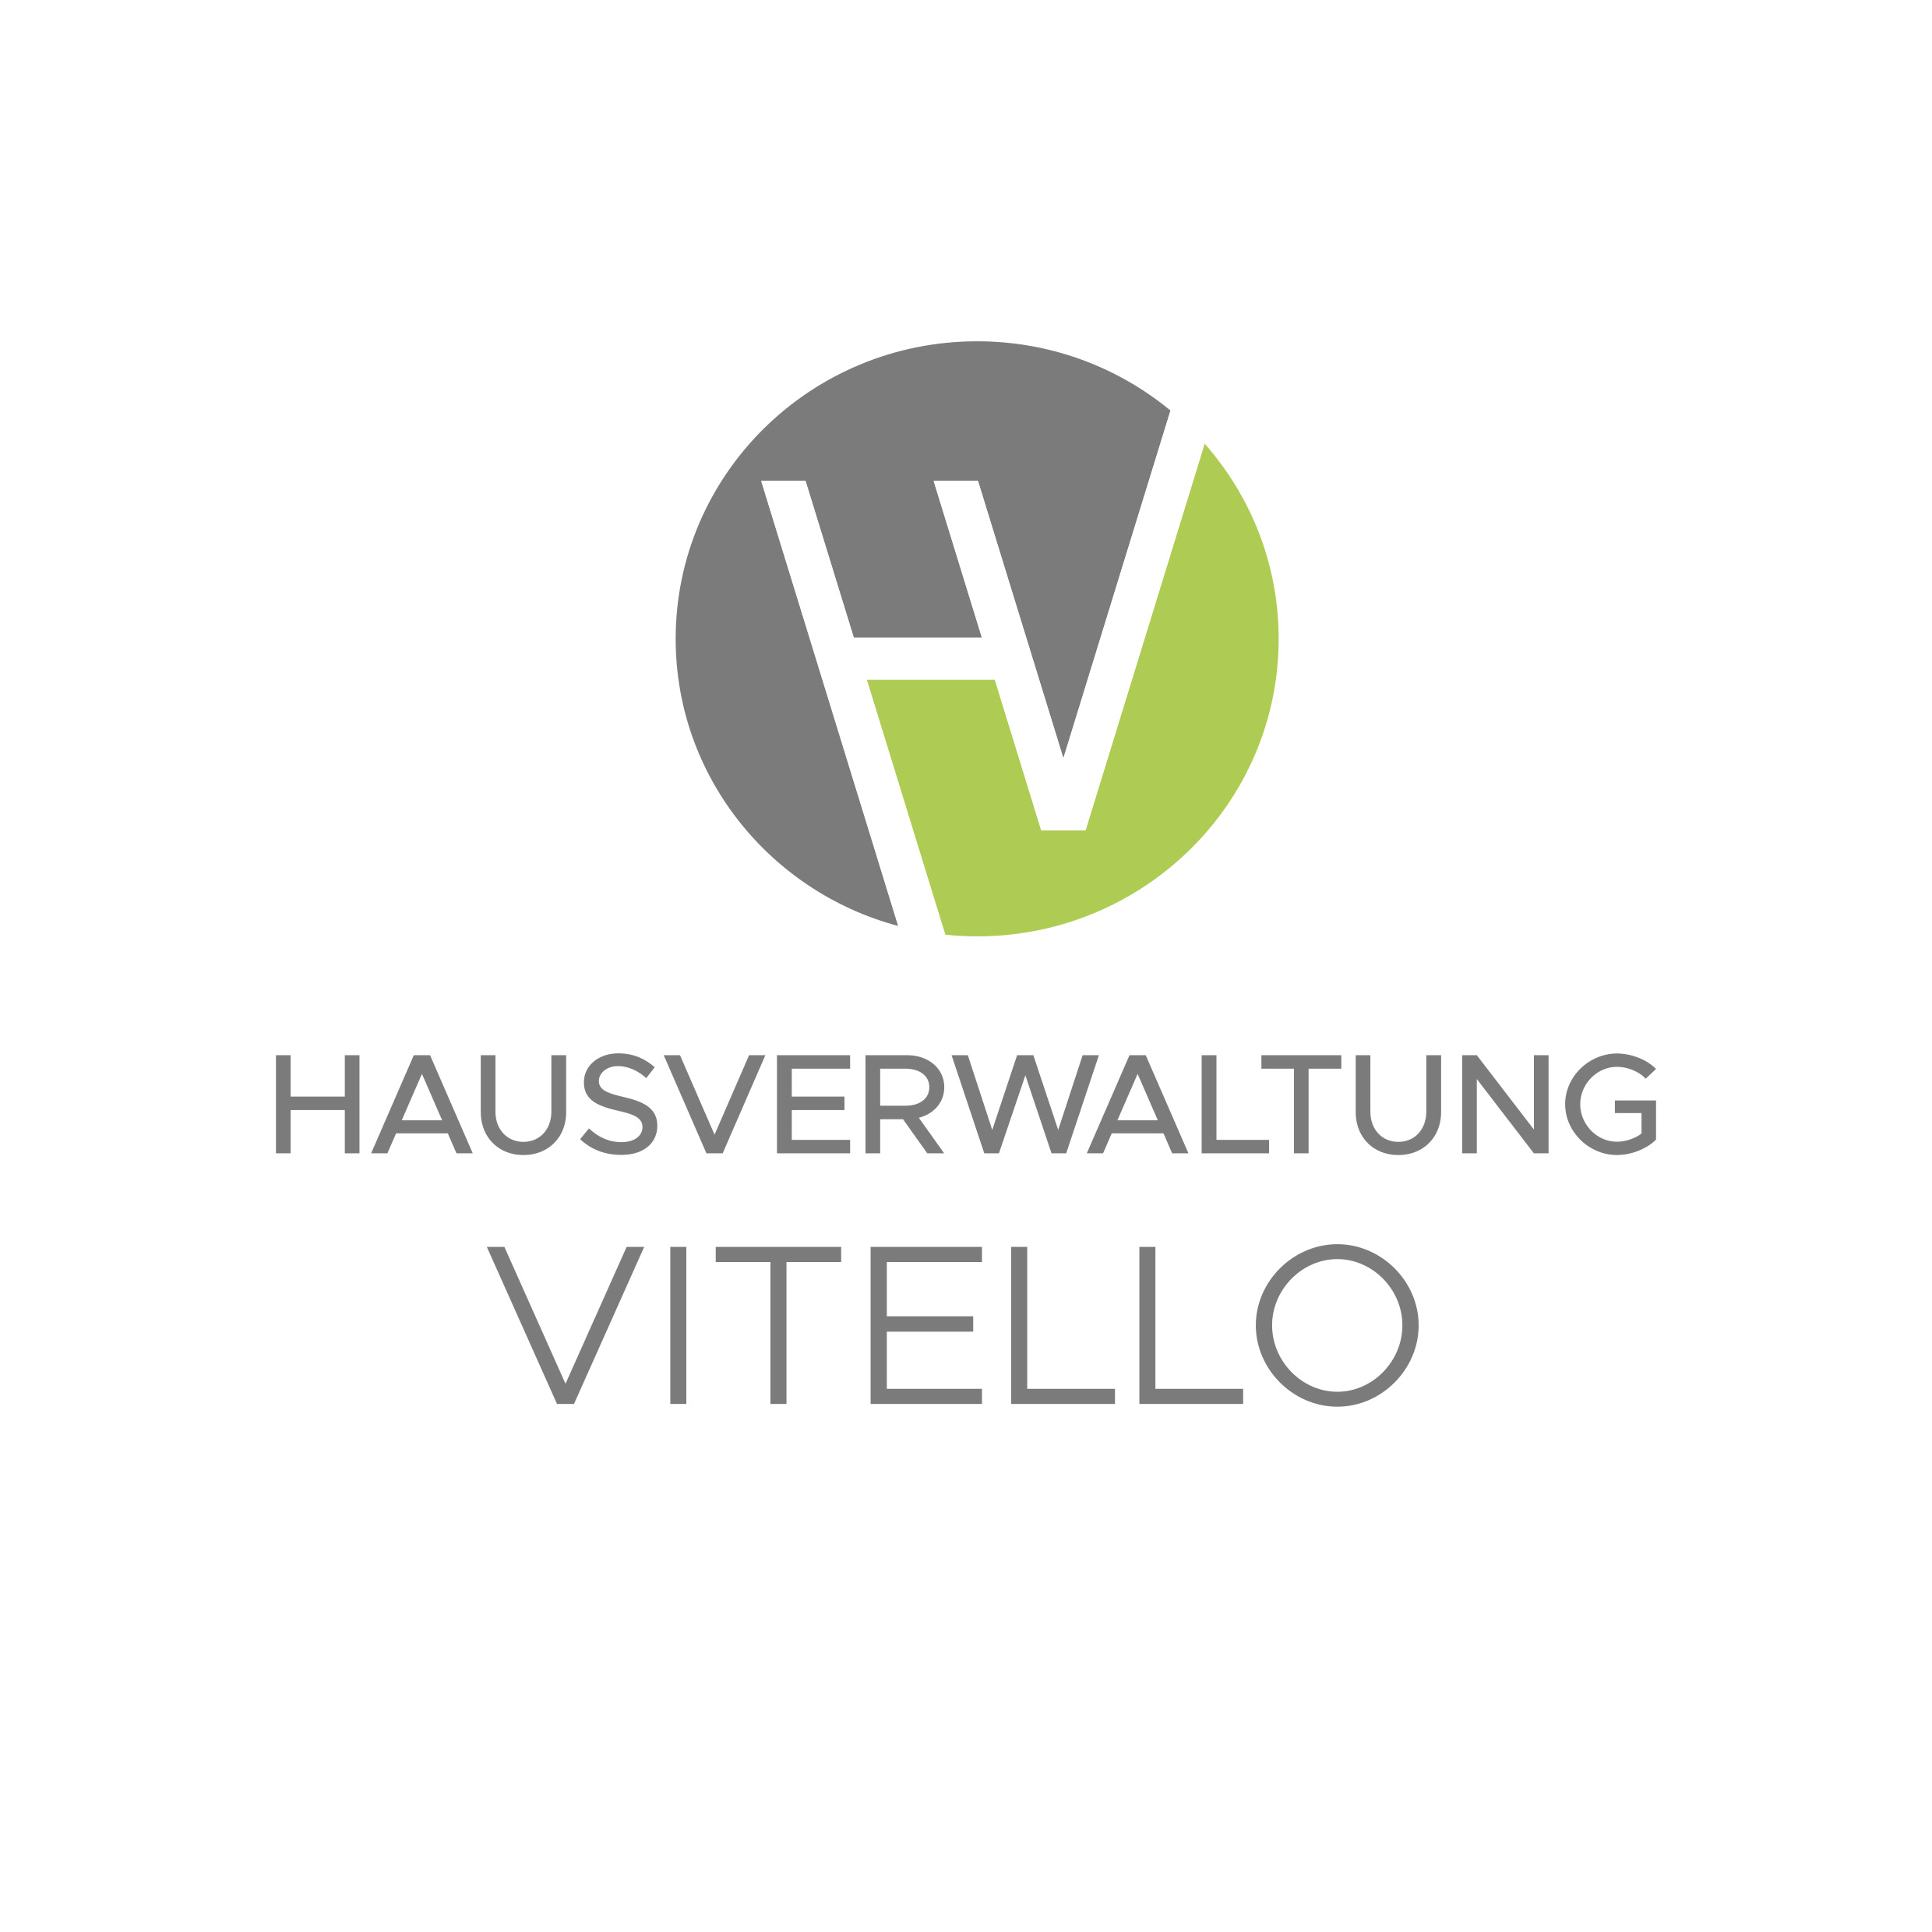 Hausverwaltung Vitello GmbH